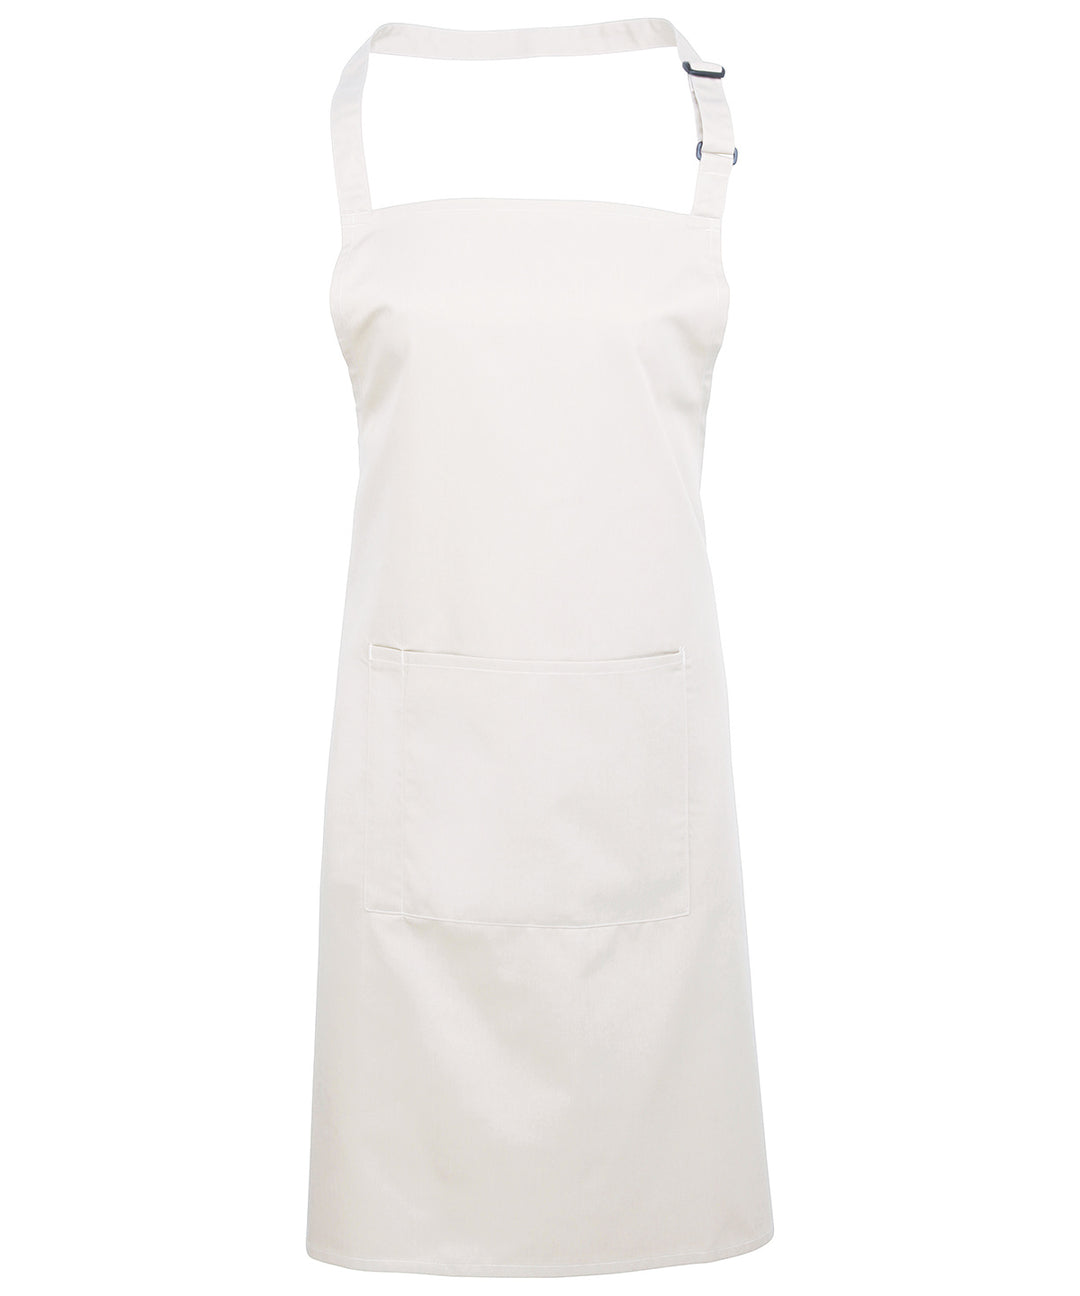 a white apron on a white background